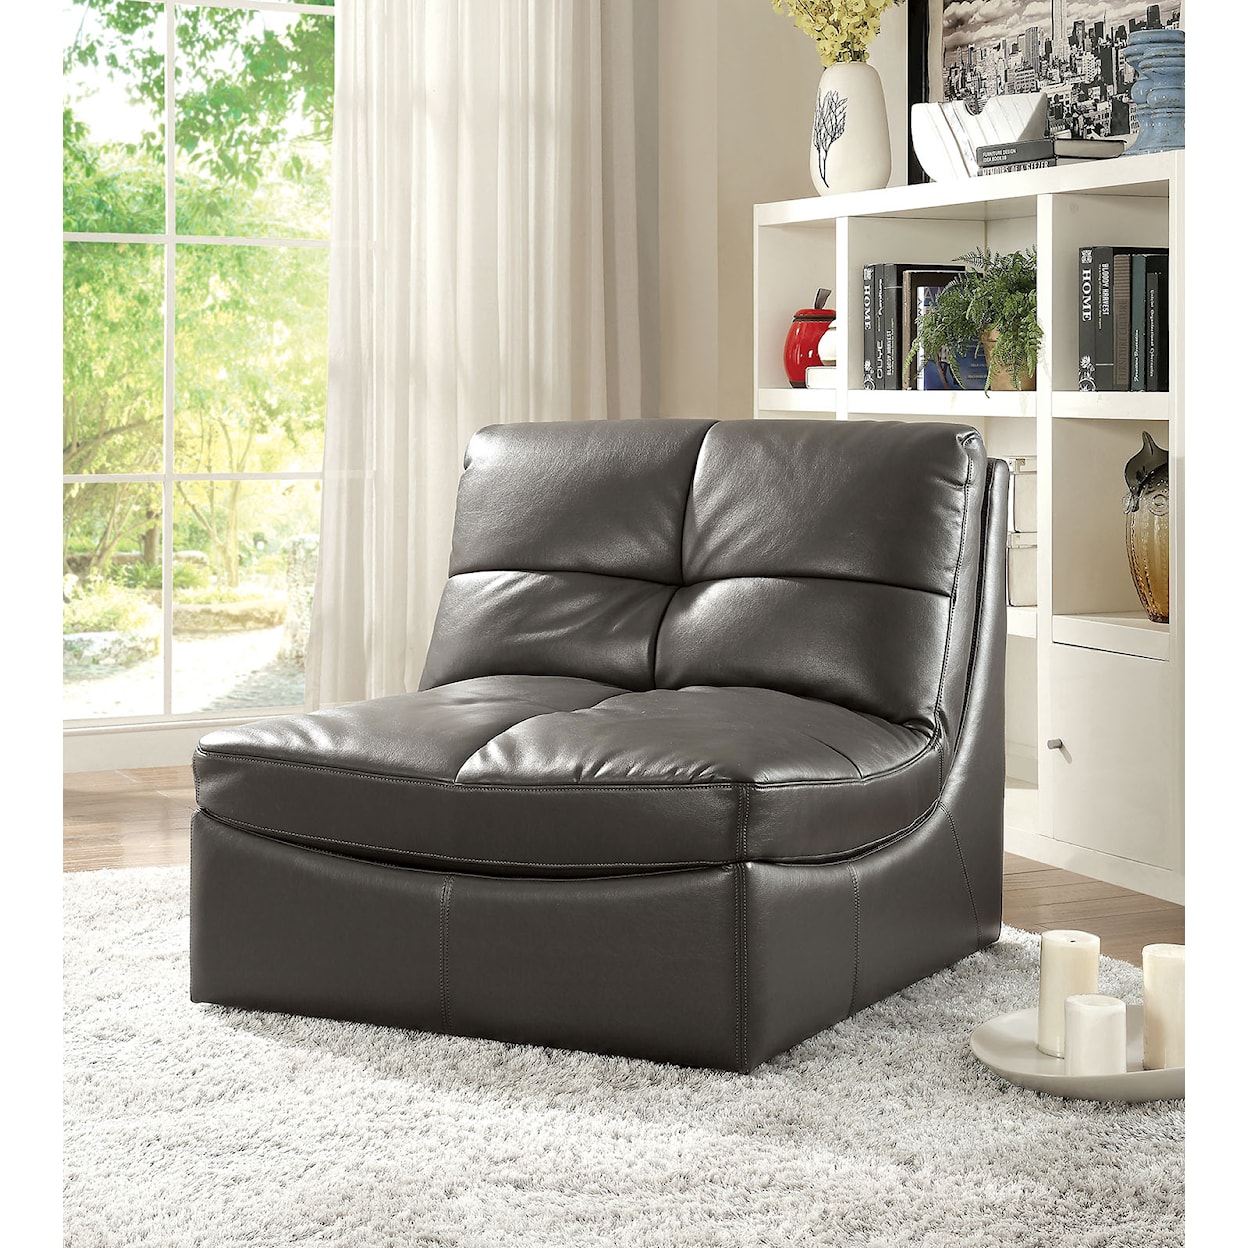 Furniture of America Libbie Chair